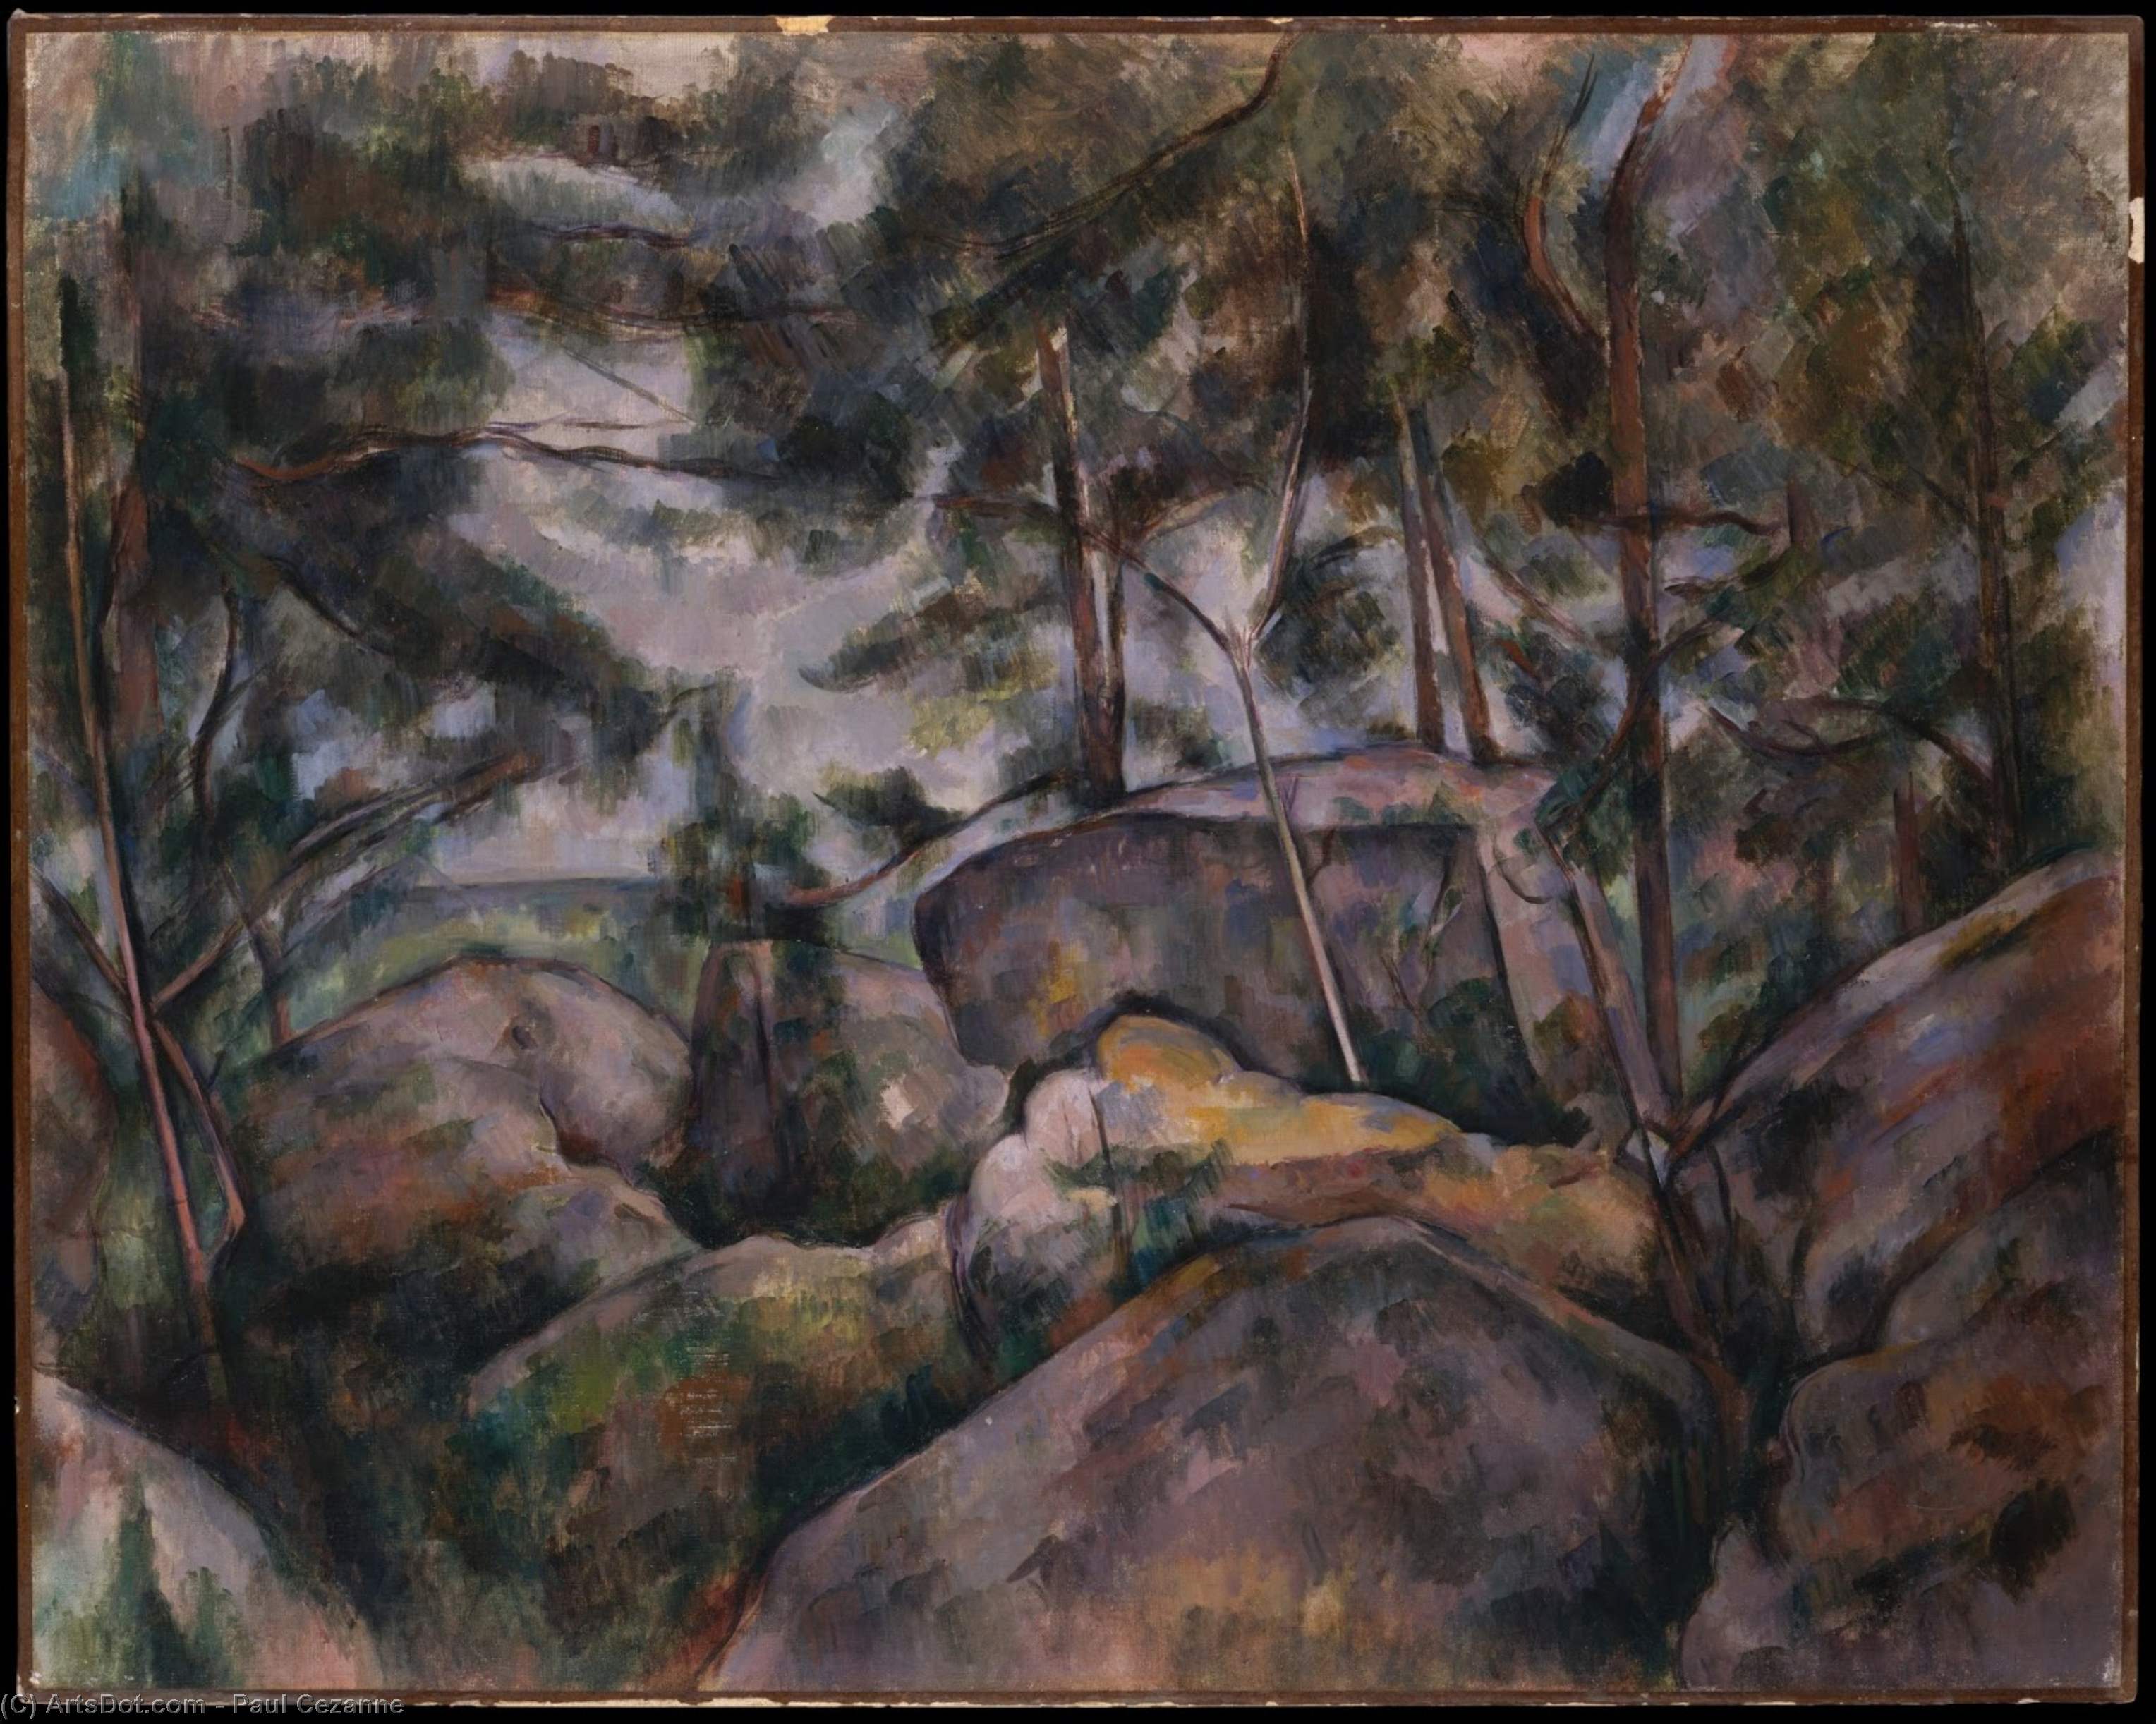 WikiOO.org - Encyclopedia of Fine Arts - Malba, Artwork Paul Cezanne - Rocks in the Forest